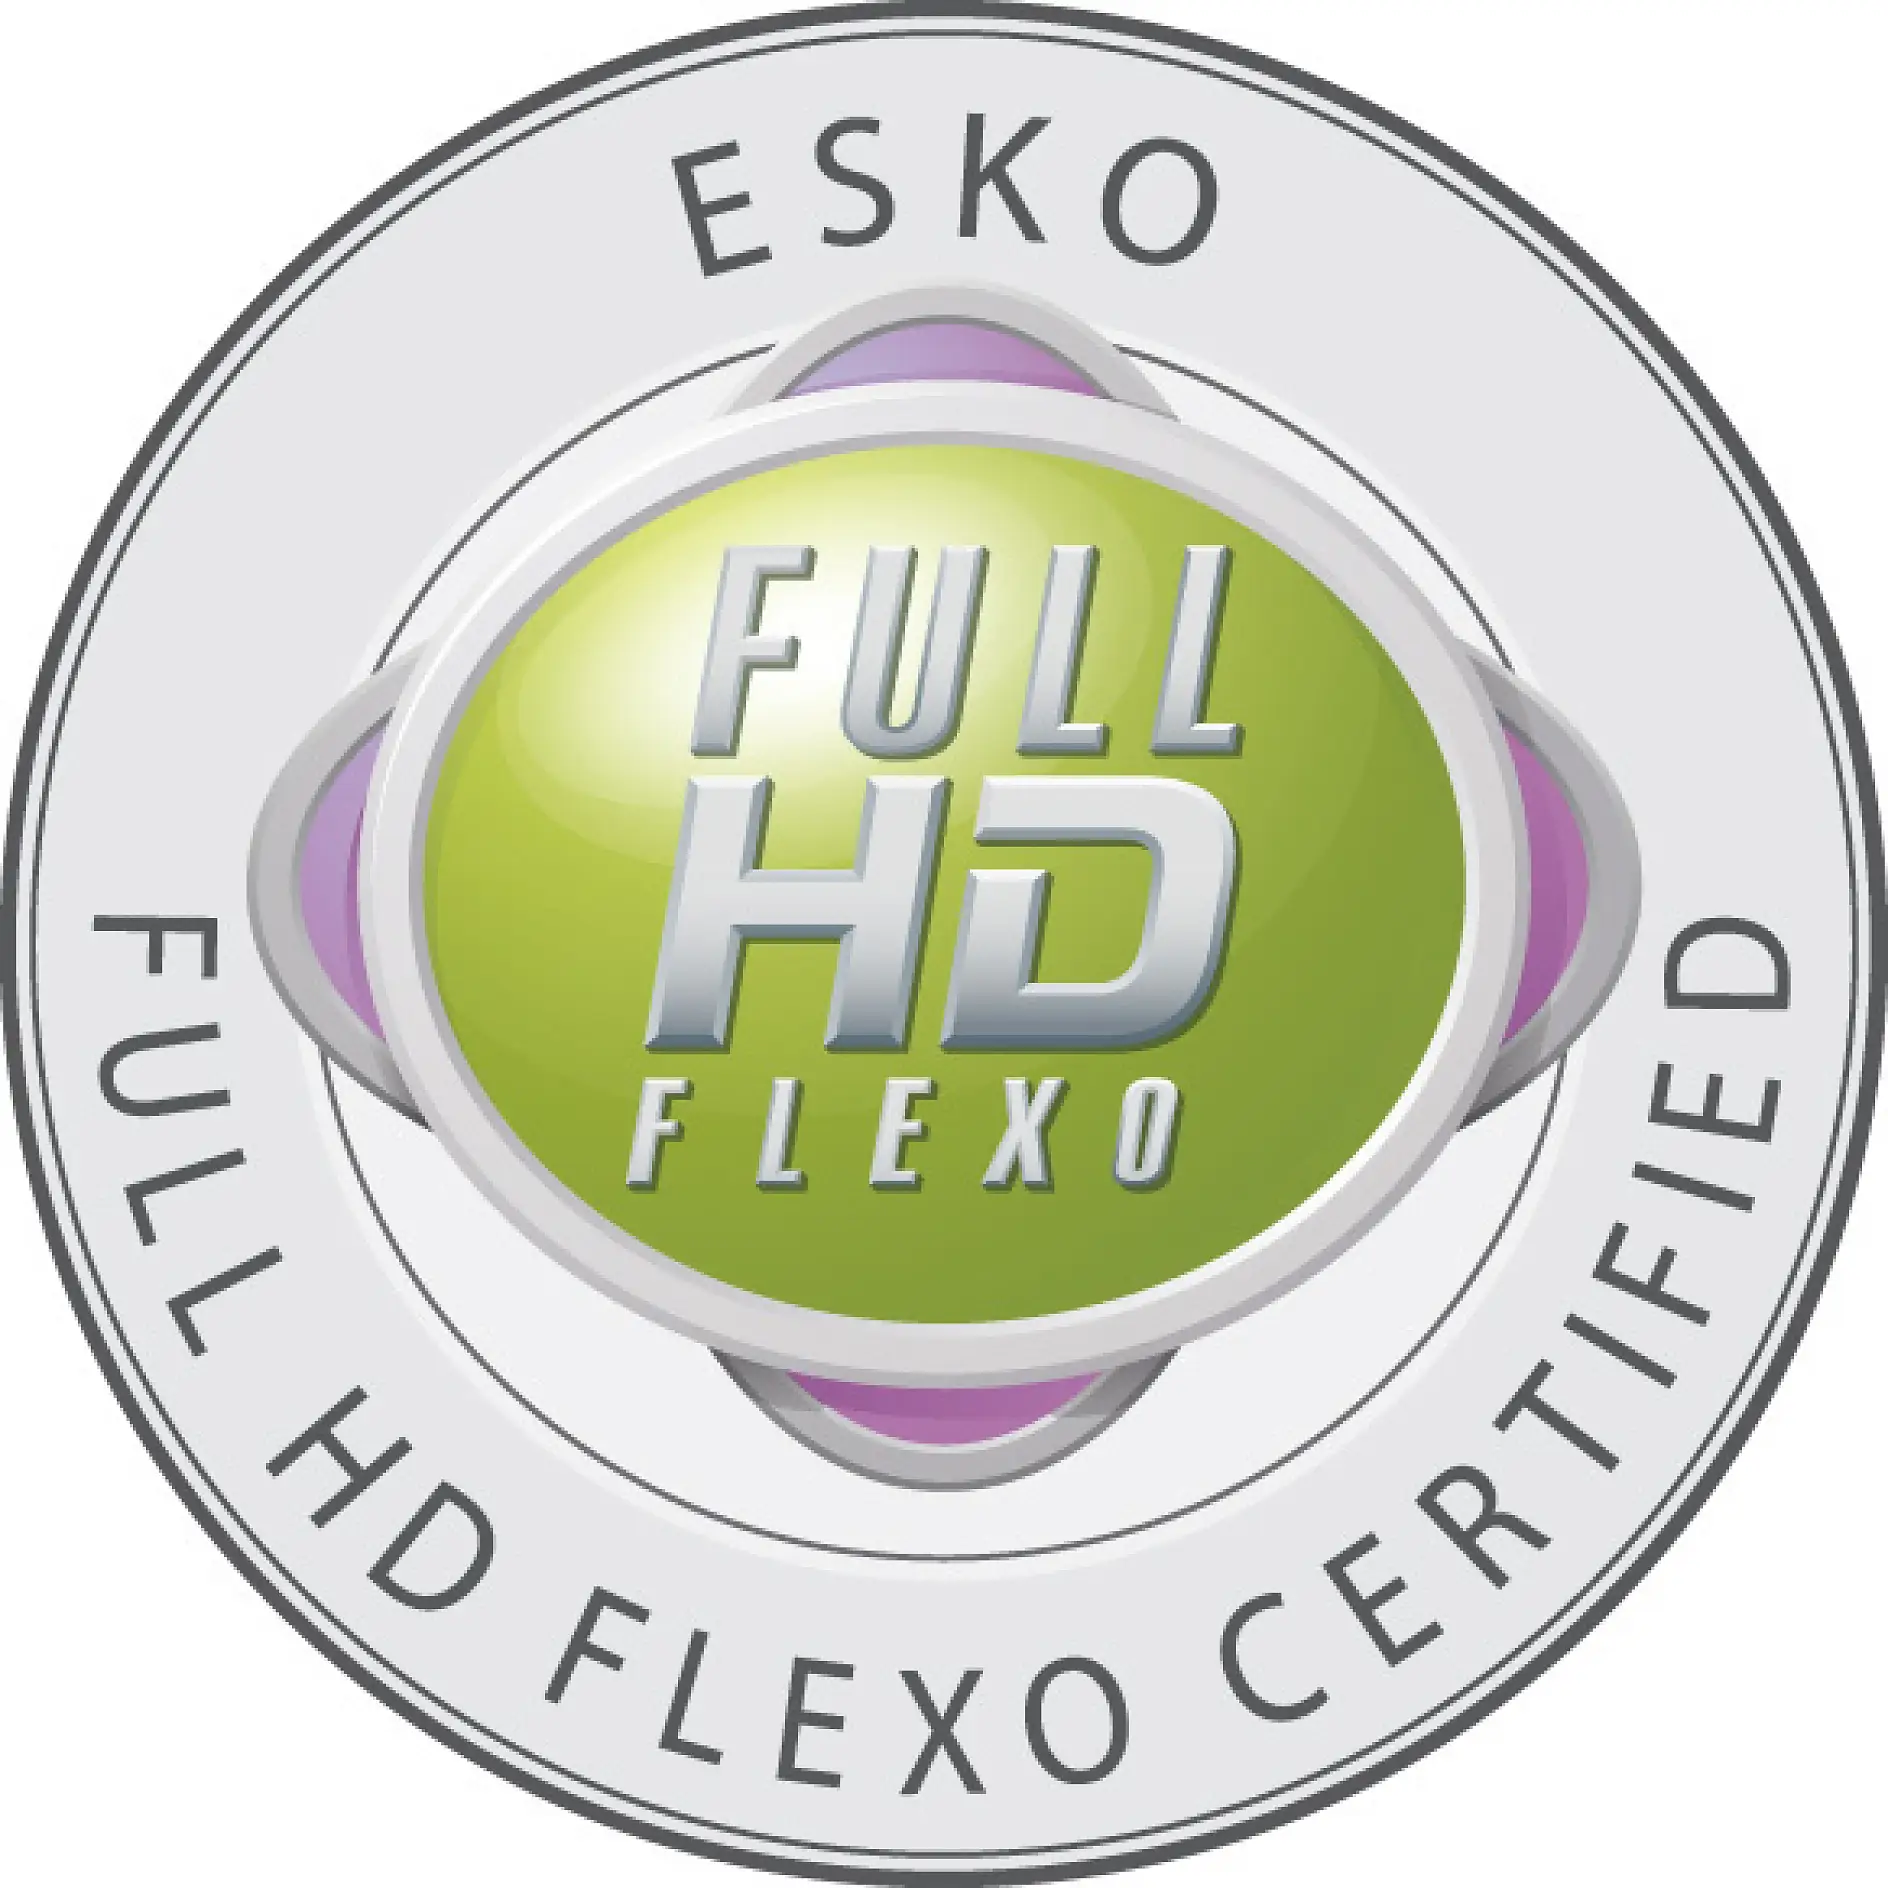 เฉพาะบริษัทที่ได้รับการรับรองเท่านั้น ที่ได้รับอนุญาตให้ติดเครื่องหมาย Full HD Flexo ได้